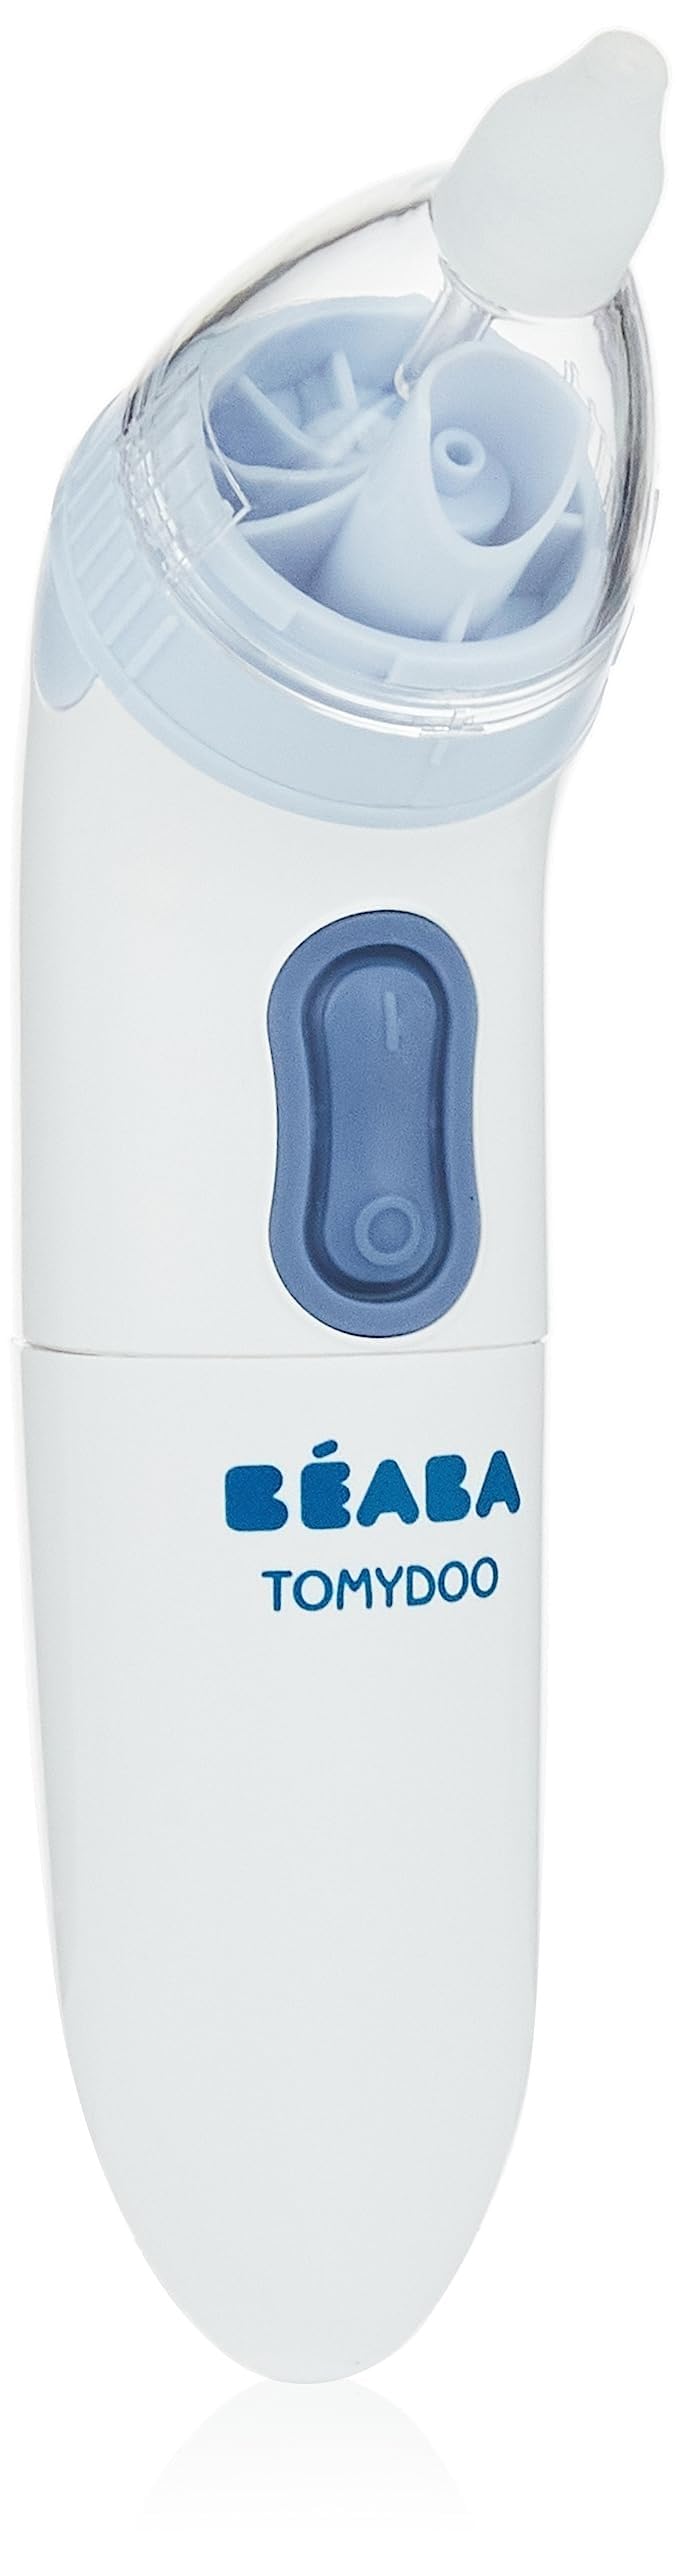 Béaba – Babynasenreiniger Tomydoo – Elektrischer Baby-Nasensauger – Blitzschnell, einfach zu bedienen und dank der 3 Aufsätze mitwachsend – Sterilisierbar, 1 Stück (1er Pack)